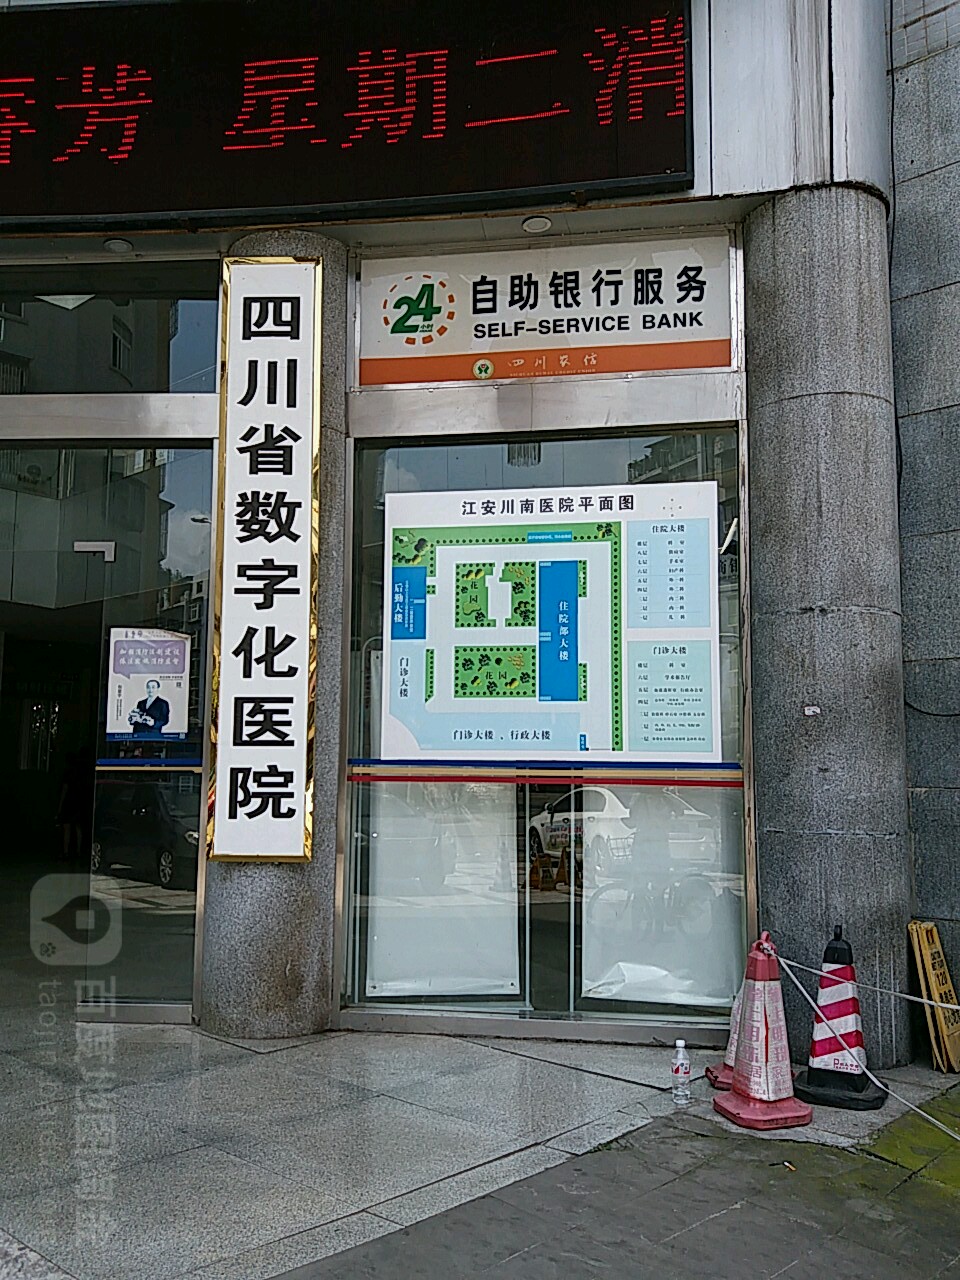 江安竹海農商銀行24小時自助銀行服務